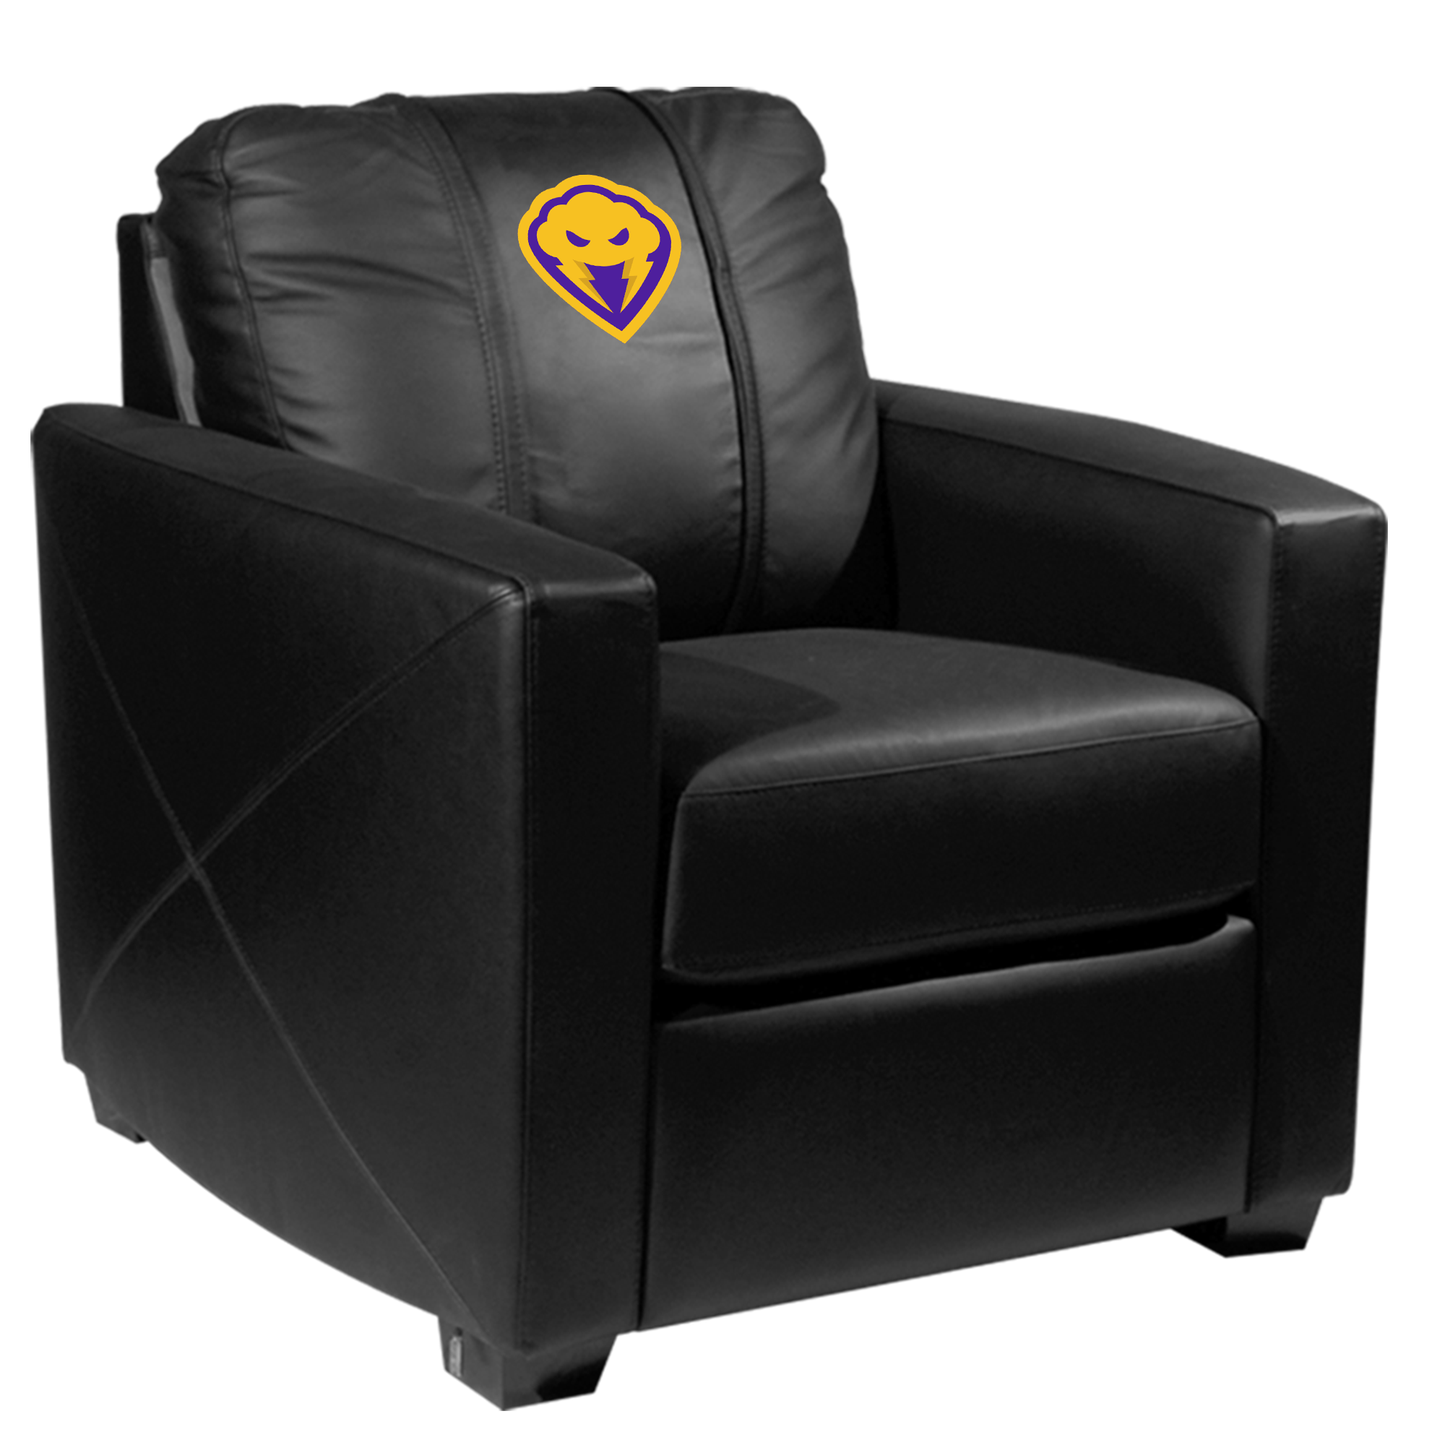 Silver Club Chair with Estorm GG Logo